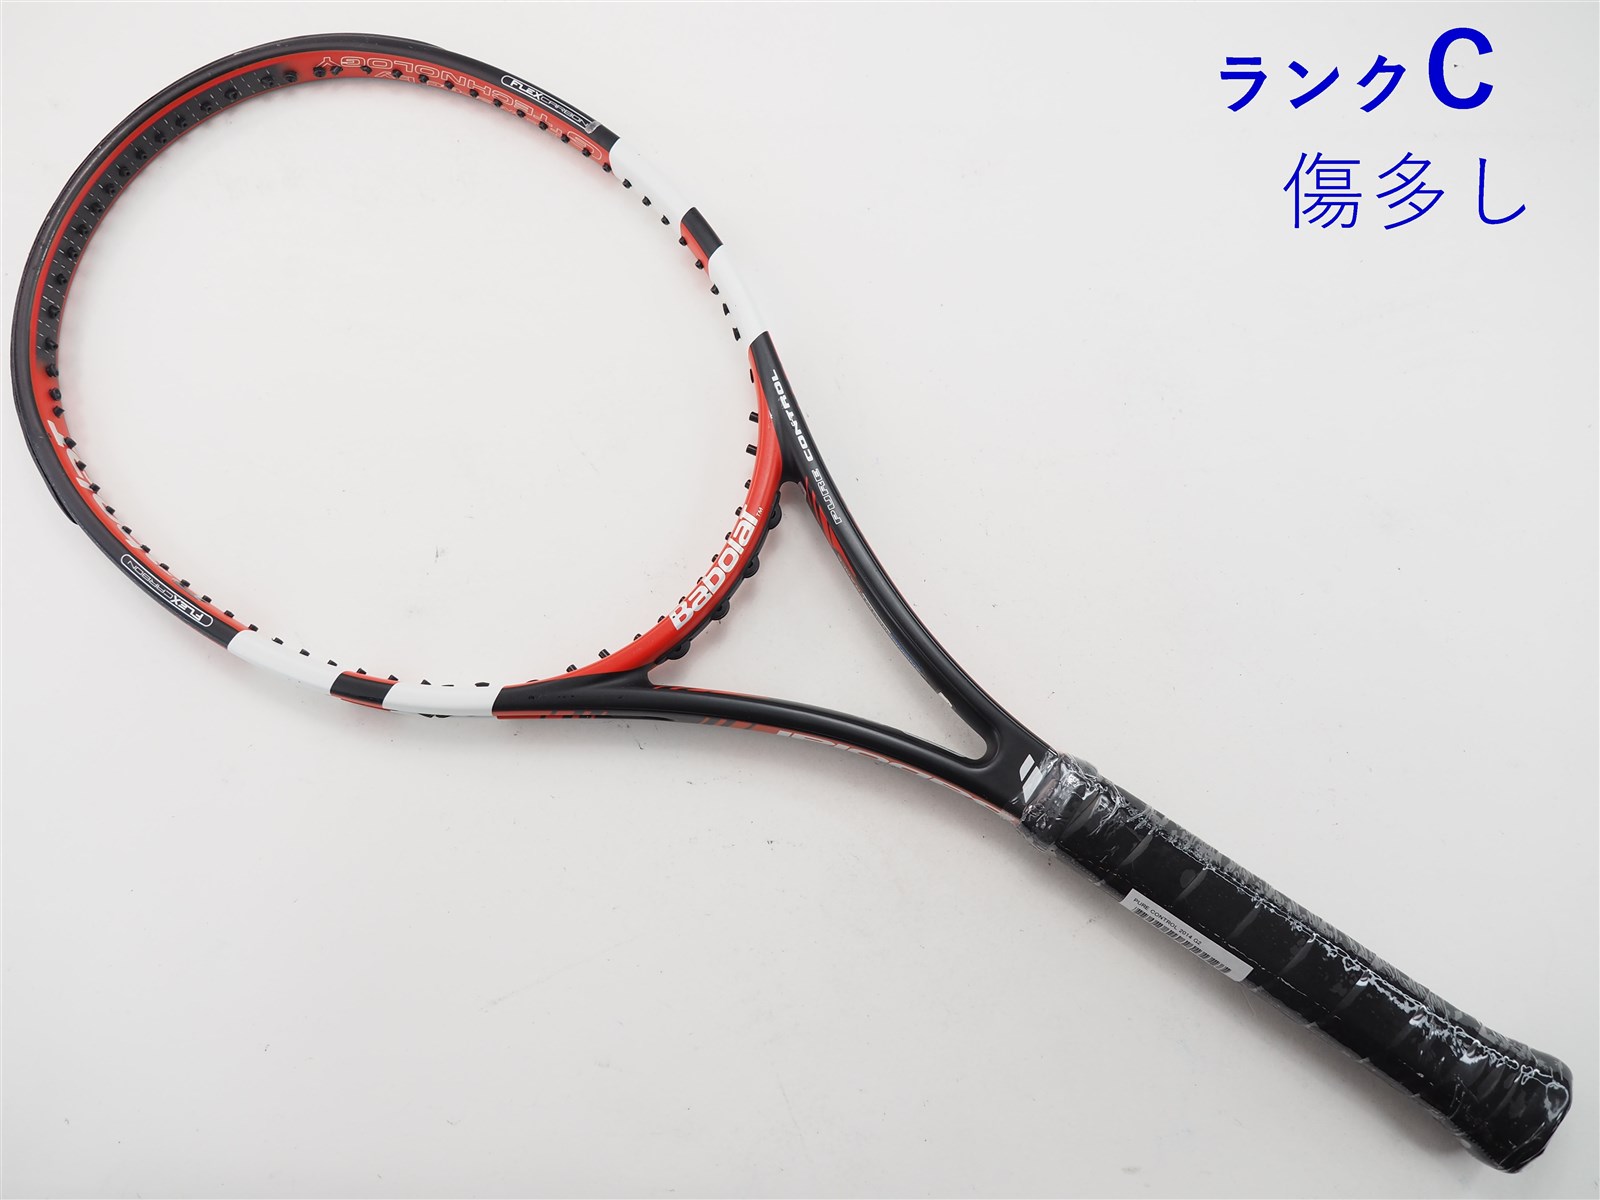 270インチフレーム厚テニスラケット バボラ ピュア コントロール